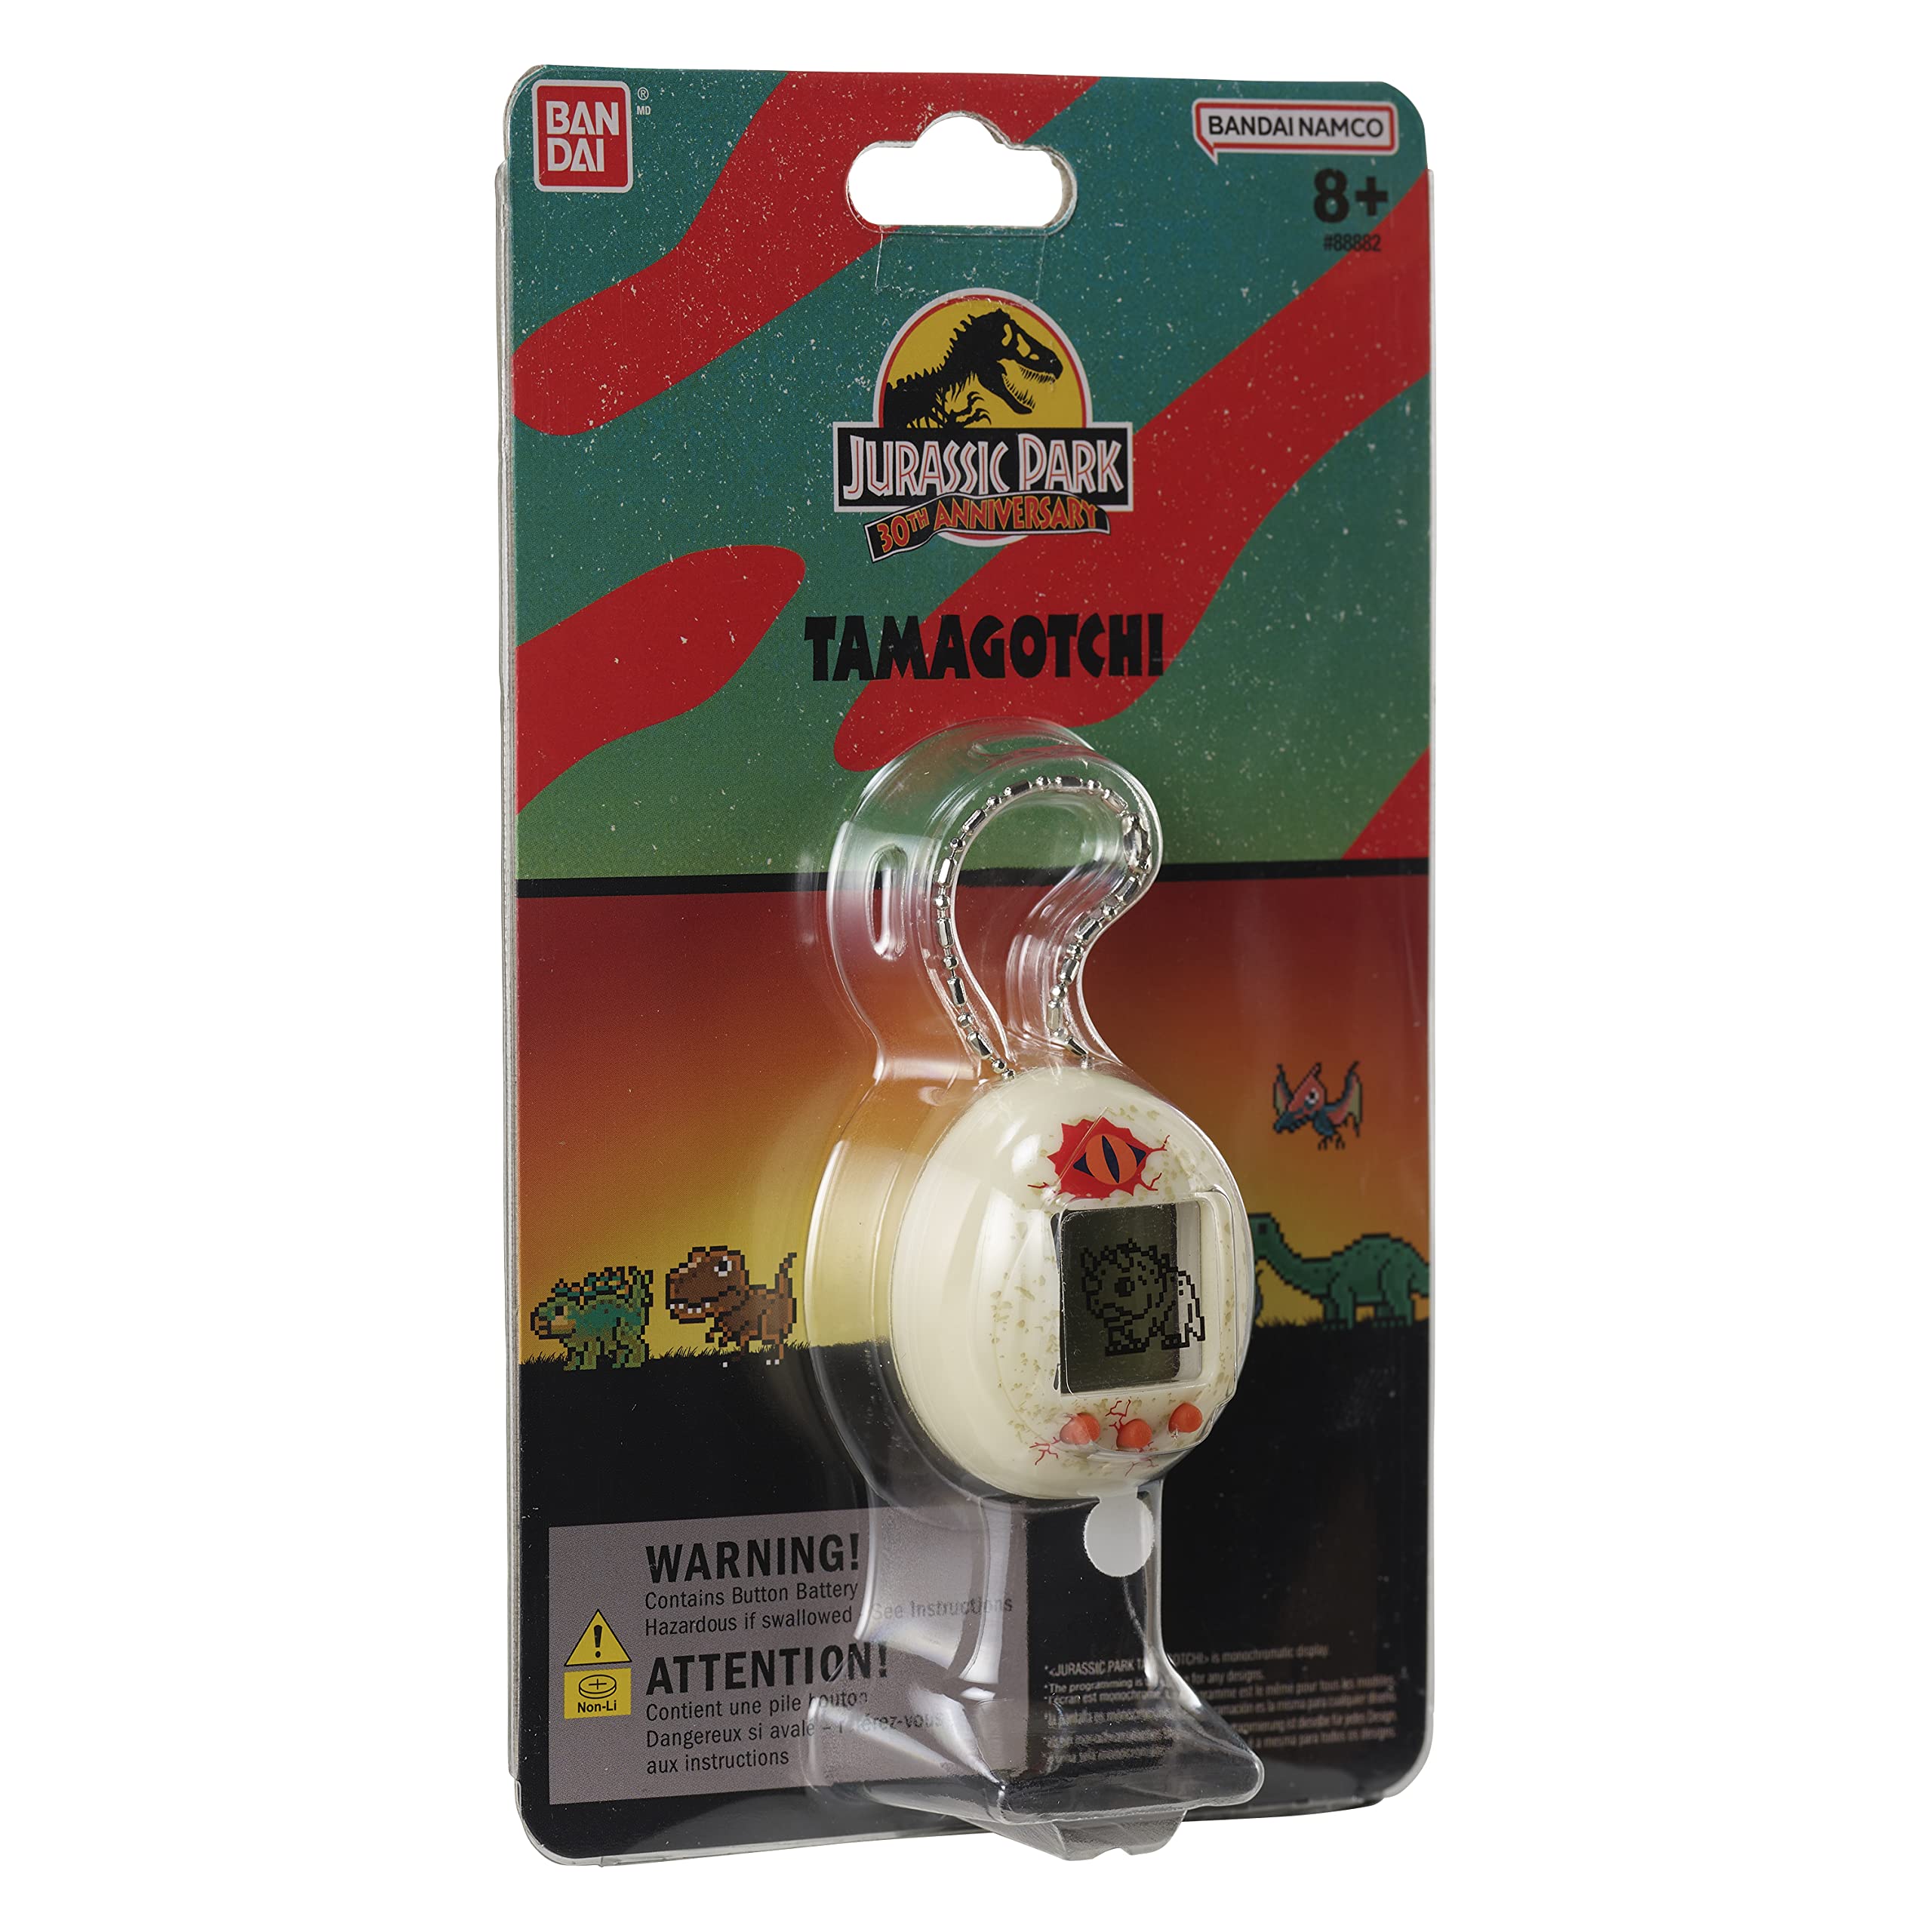 Tamagotchi Nano x Jurassic Park 30th Anniversary - Dinosaur Egg ver.